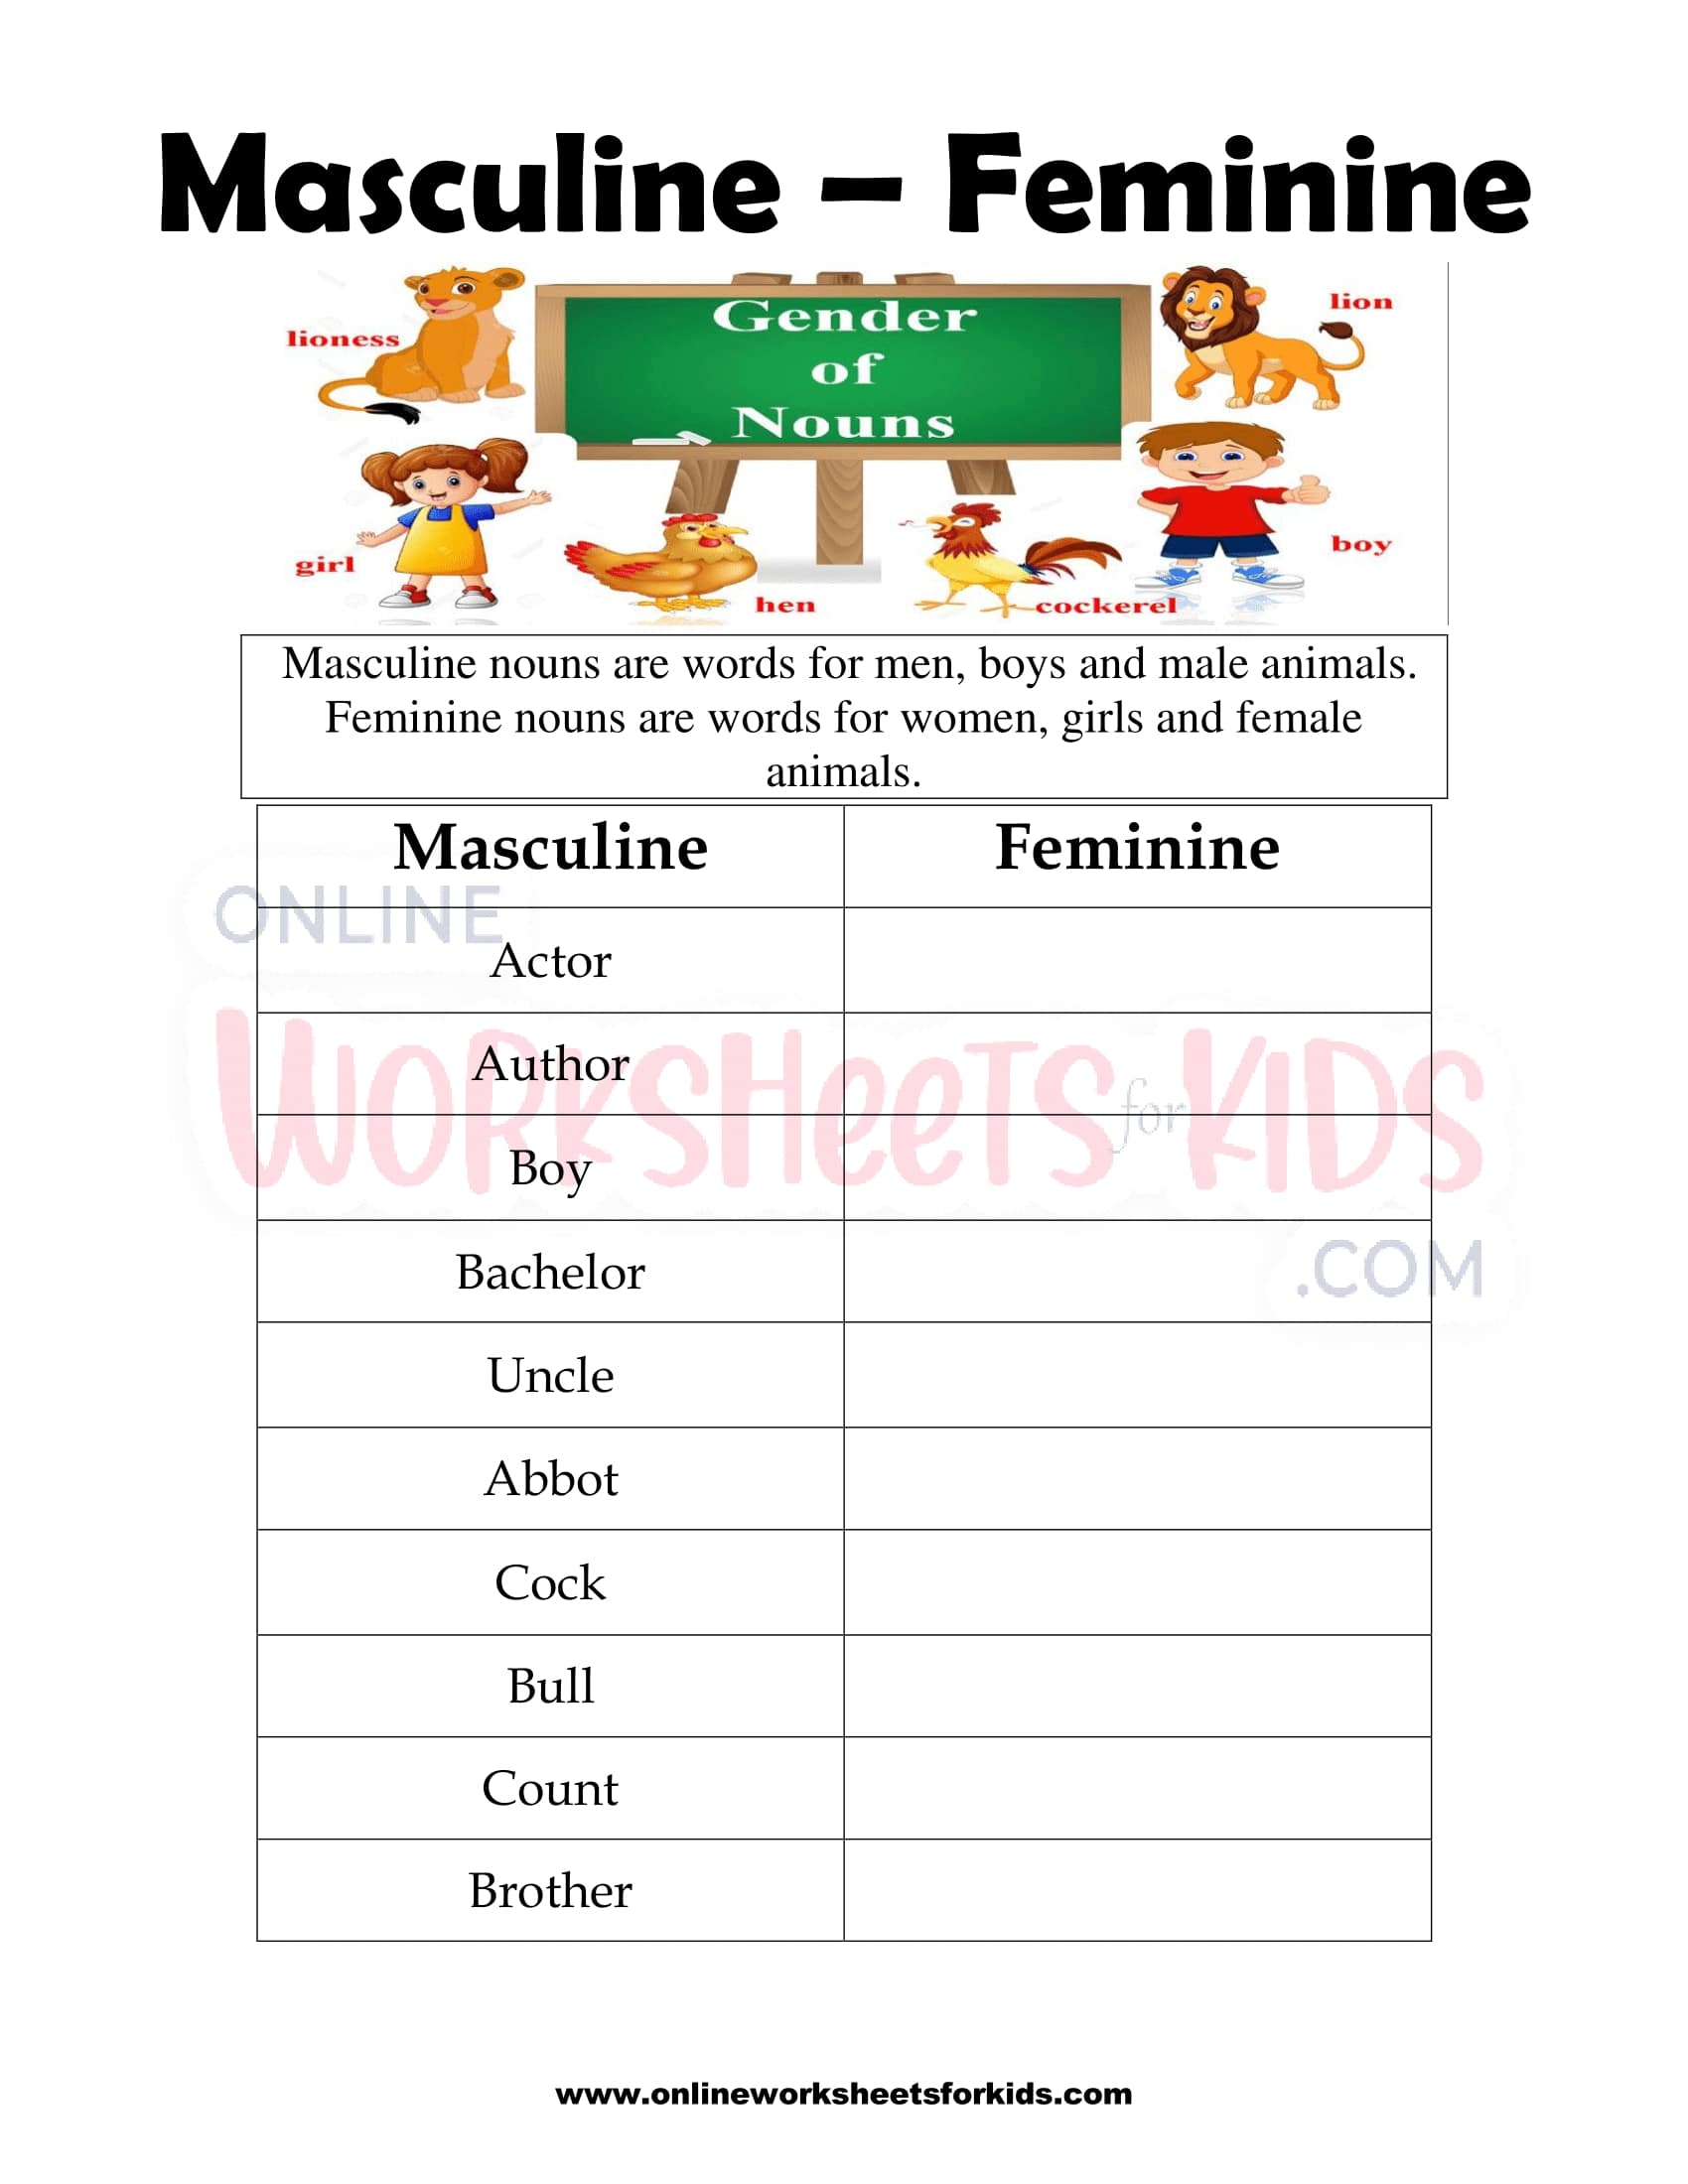 nouns-gender-worksheet-nouns-activities-nouns-nouns-worksheet-gender